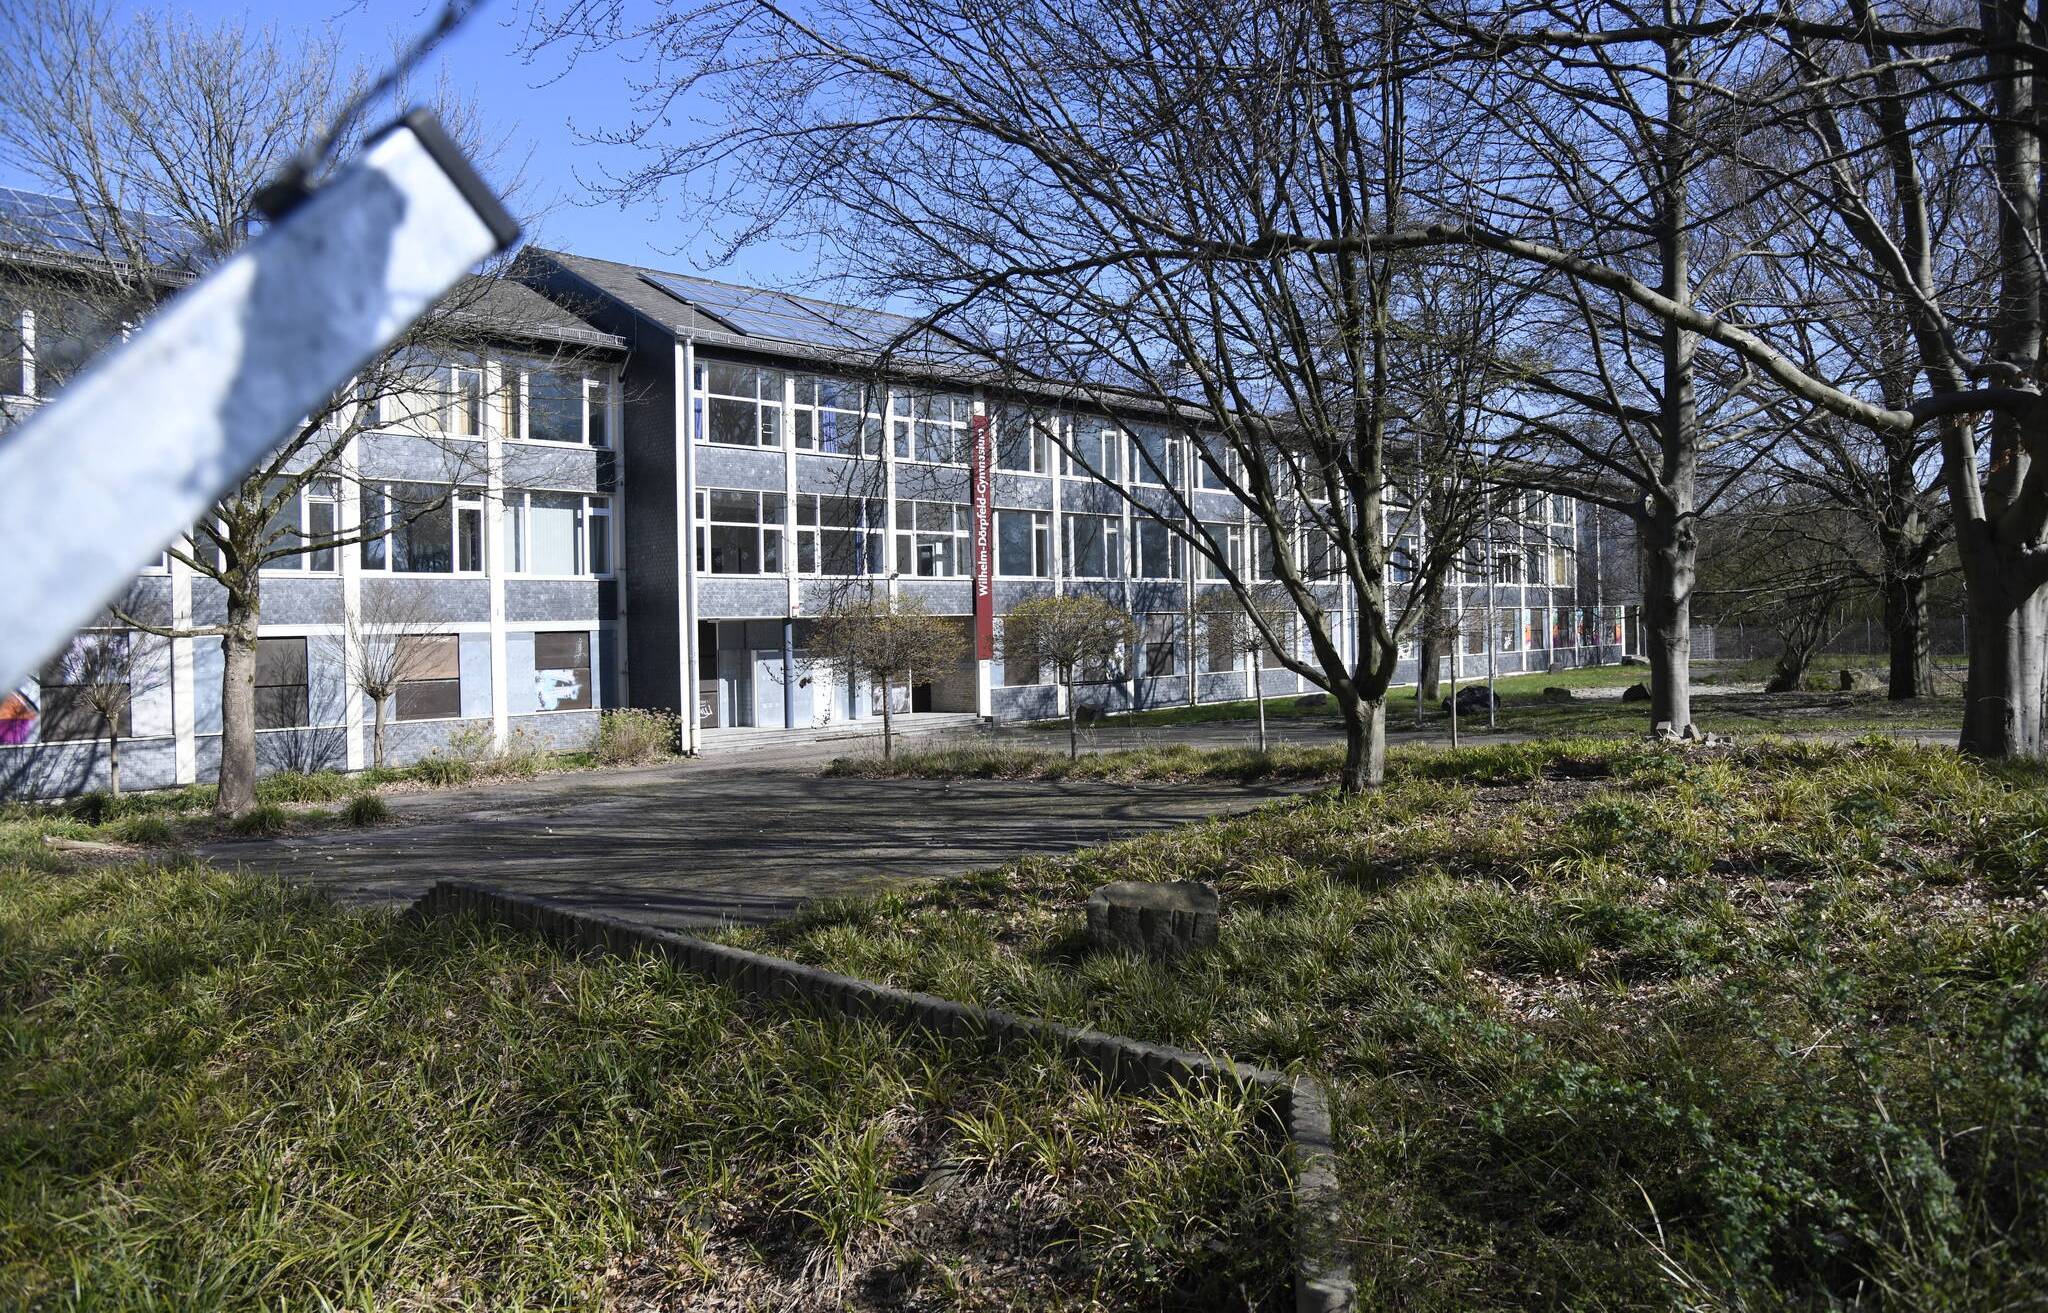  Die Beschlussvorlage der Stadtverwaltung sieht vor, die ehemalige Pädagogische Hochschule auf der Hardt endgültig abzureißen und durch 40 Jahre lang für den Schulbetrieb nutzbare Modulbauten zu ersetzen. 